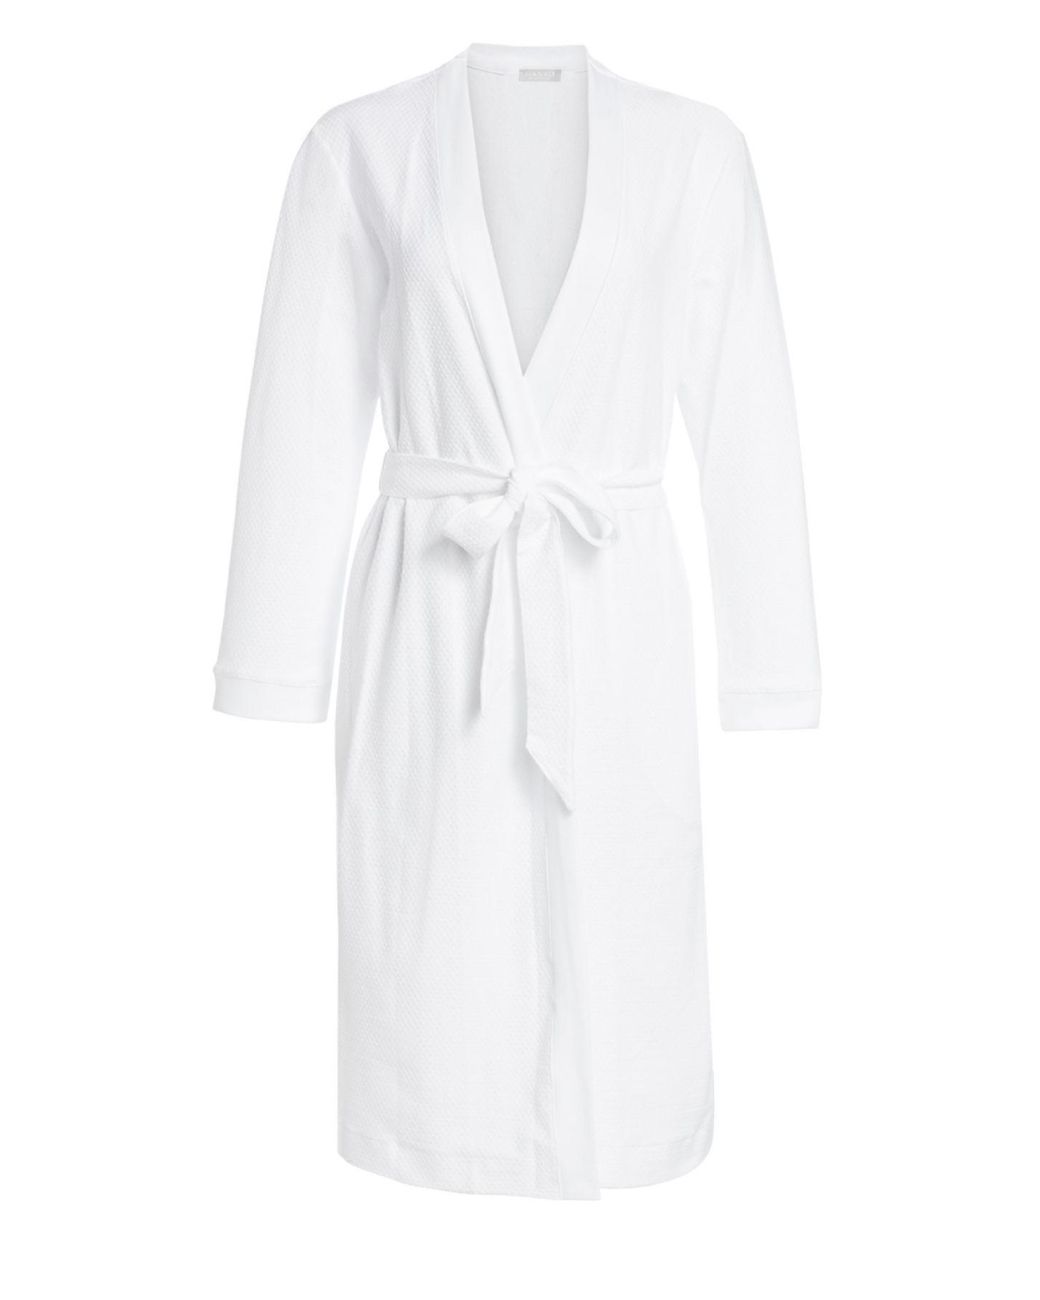 Hanro Cotton Pique Robe in White - Lyst